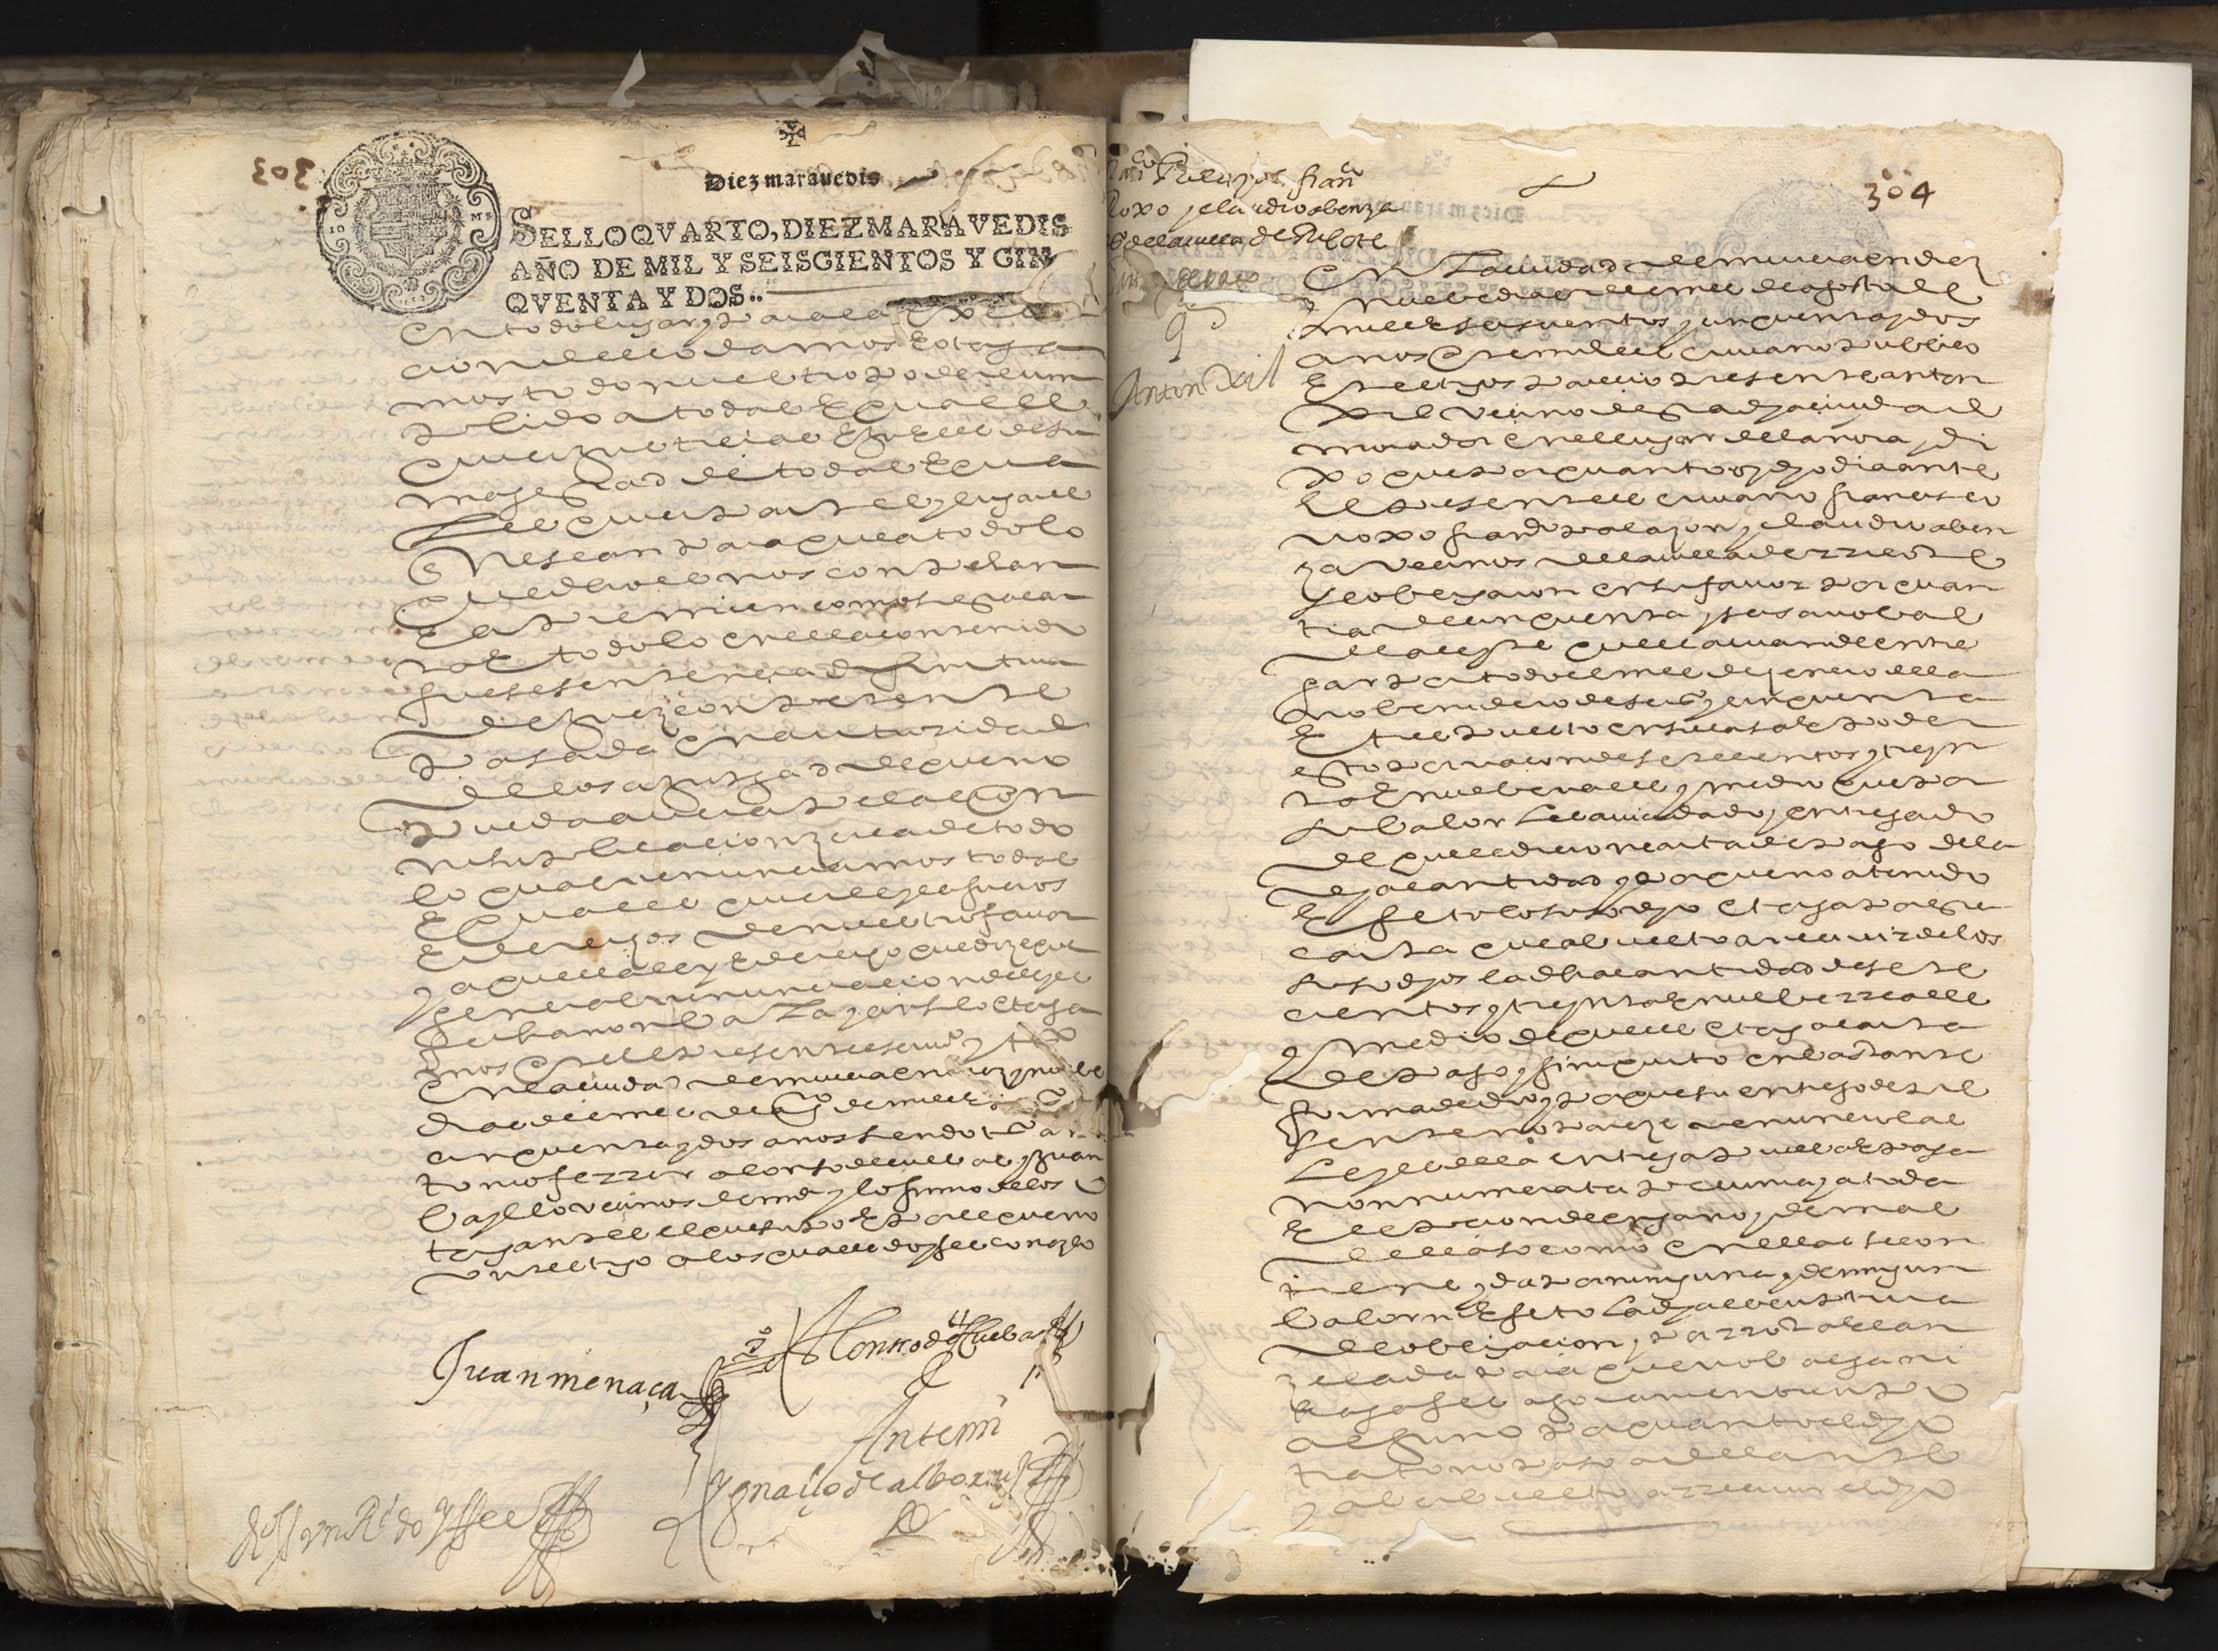 Registro de Ignacio de Albornoz y Velasco, Murcia de 1652.